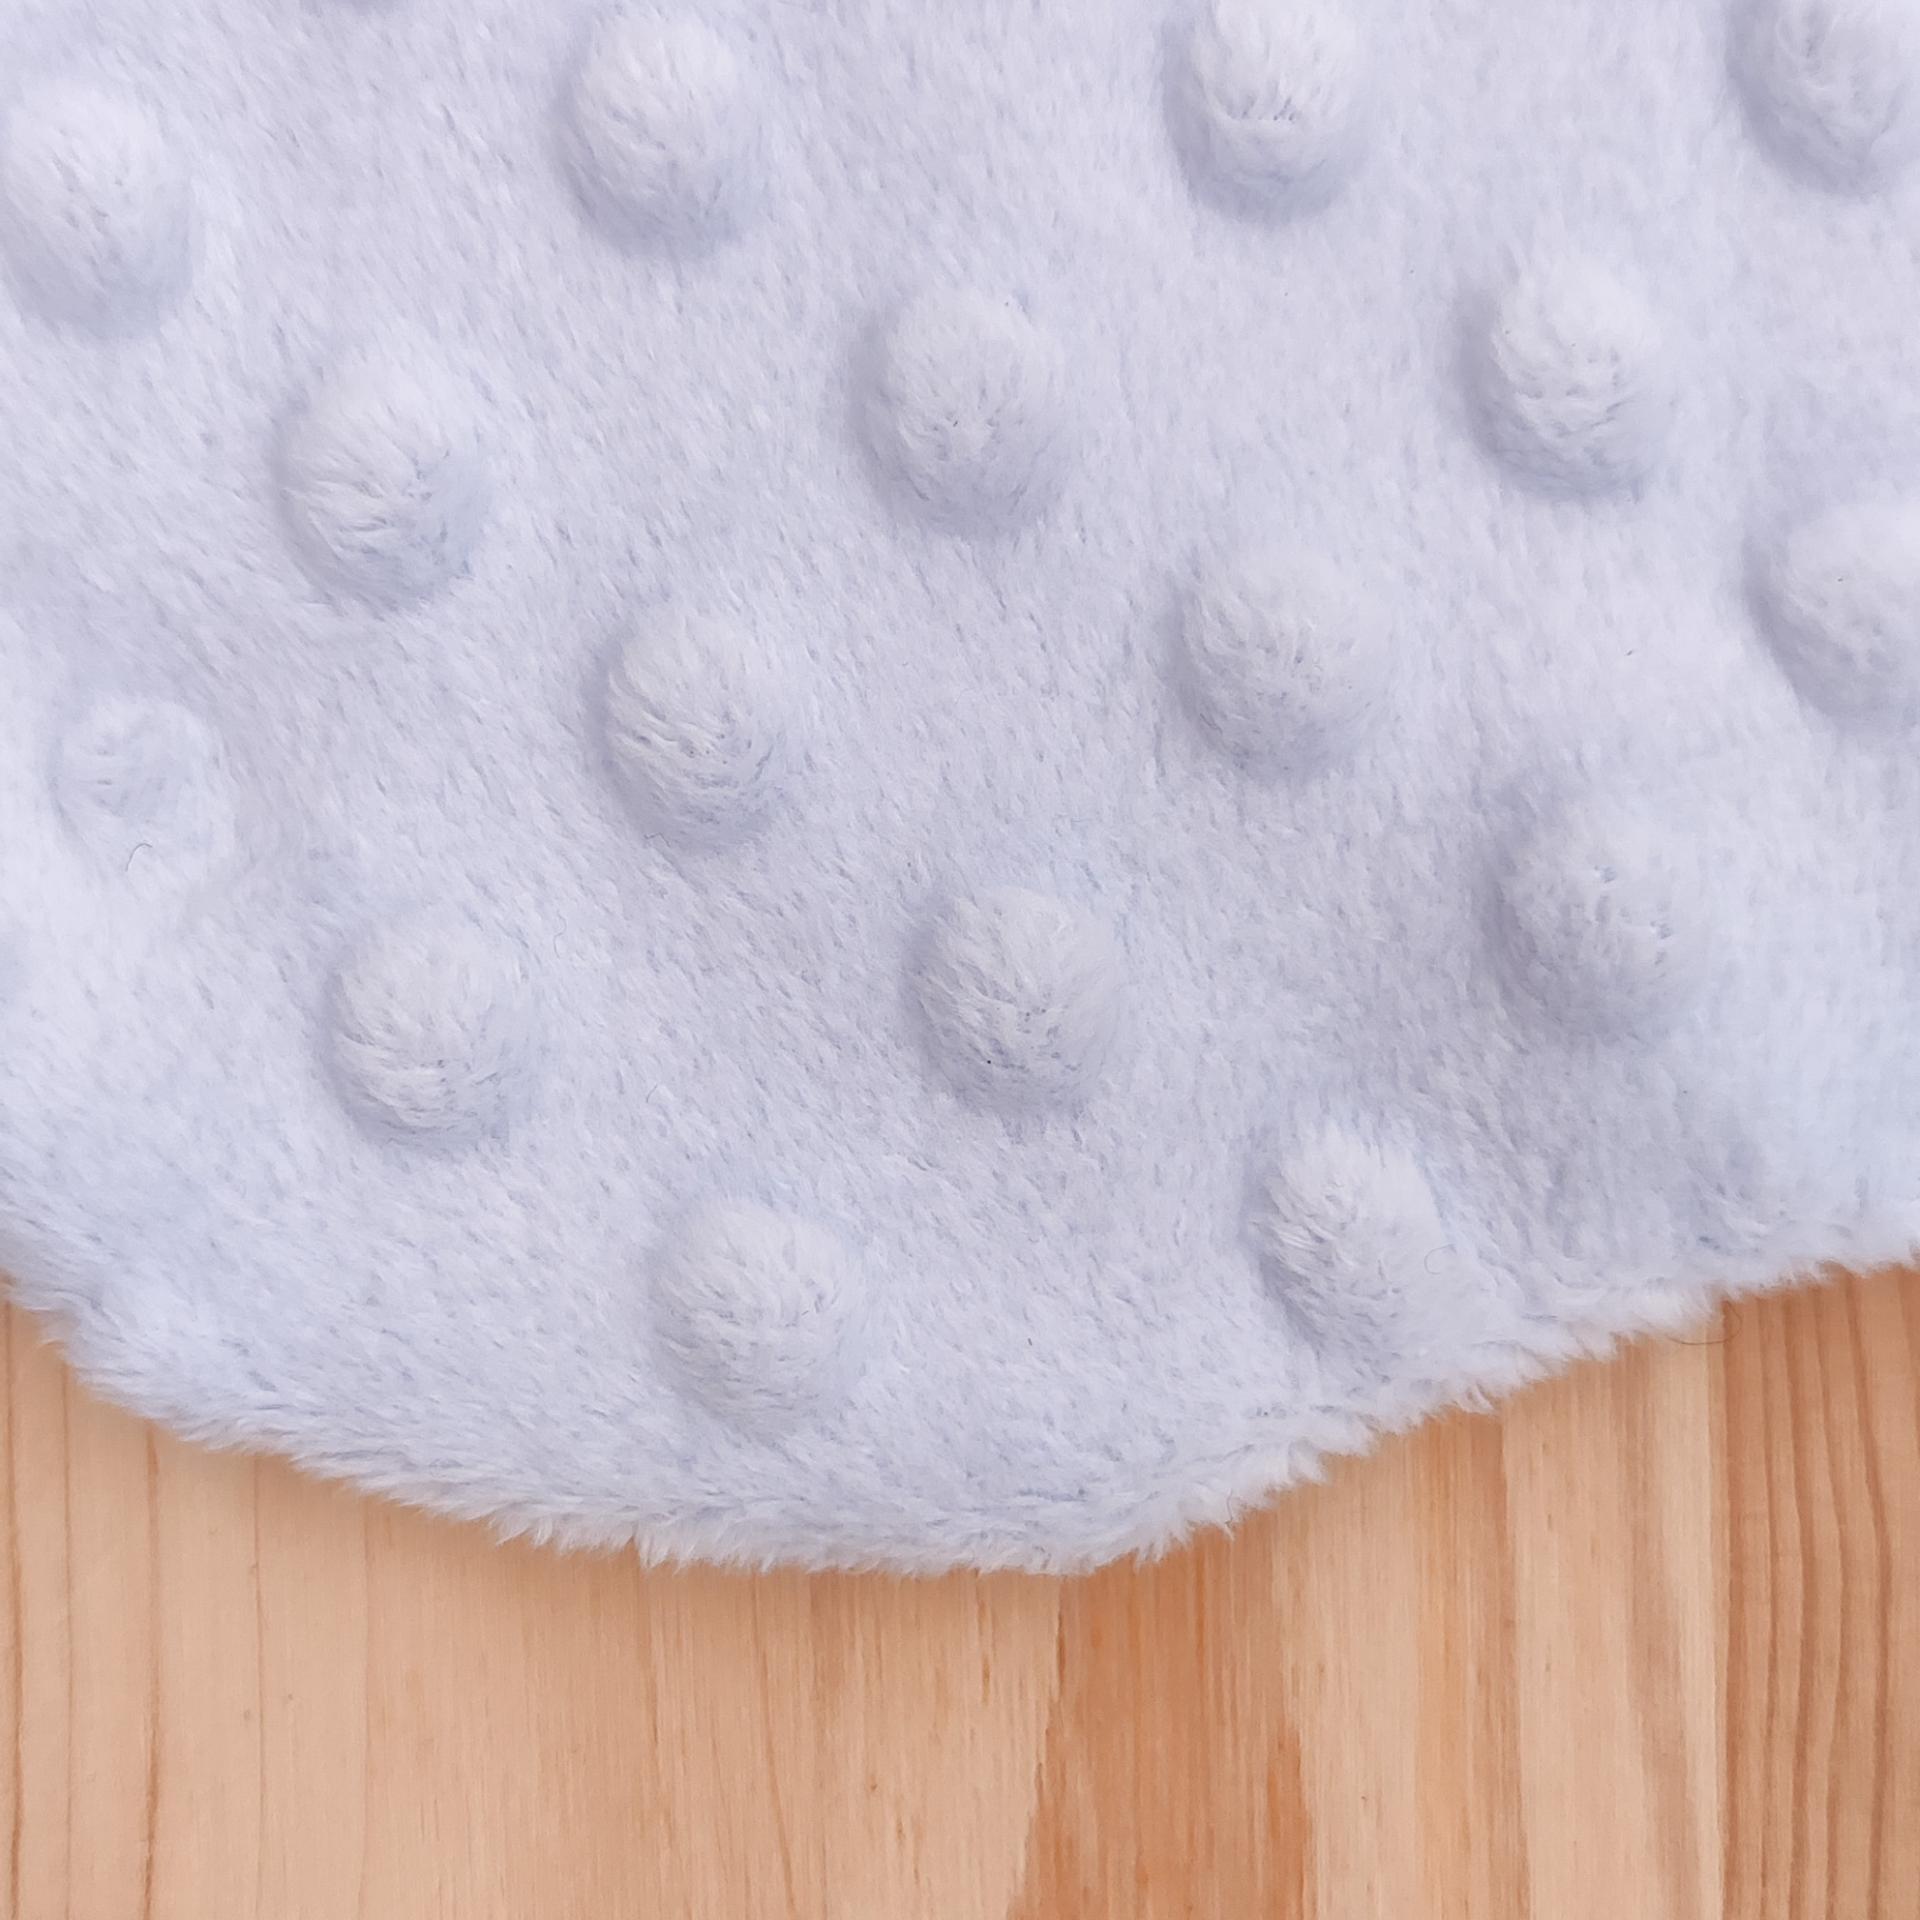 Les petites bulles du tissu minky de notre doudou sensoriel stimulent les sens de votre bébé pour un moment de tendresse et de découverte tout en douceur.